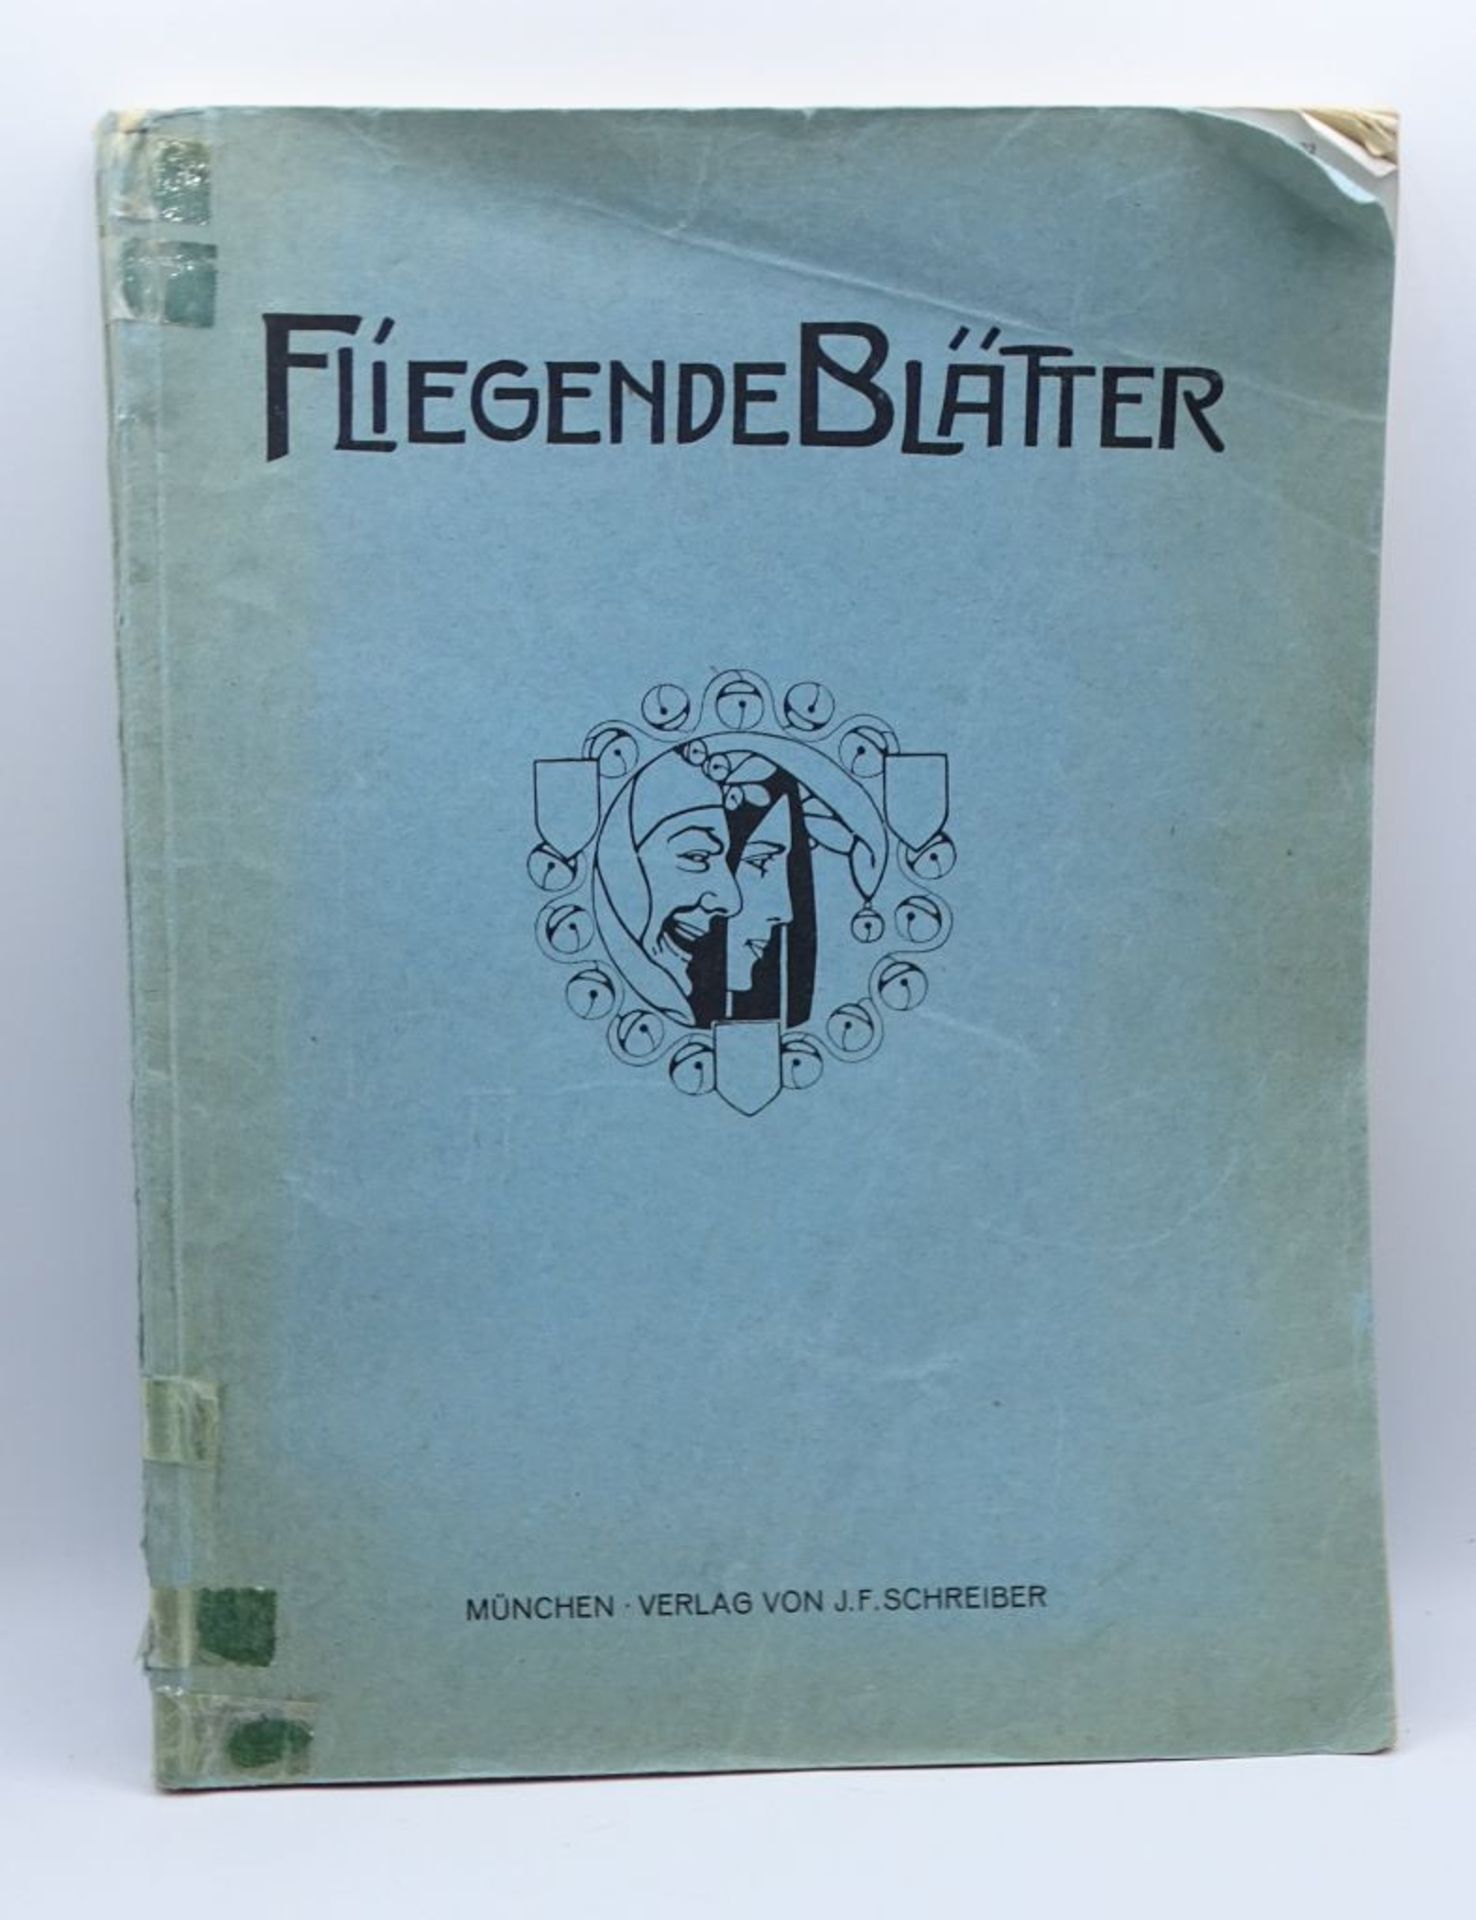 Heft "Fliegende Blätter",München Verlag, 19- - -22.61 % buyer's premium on the hammer priceVAT